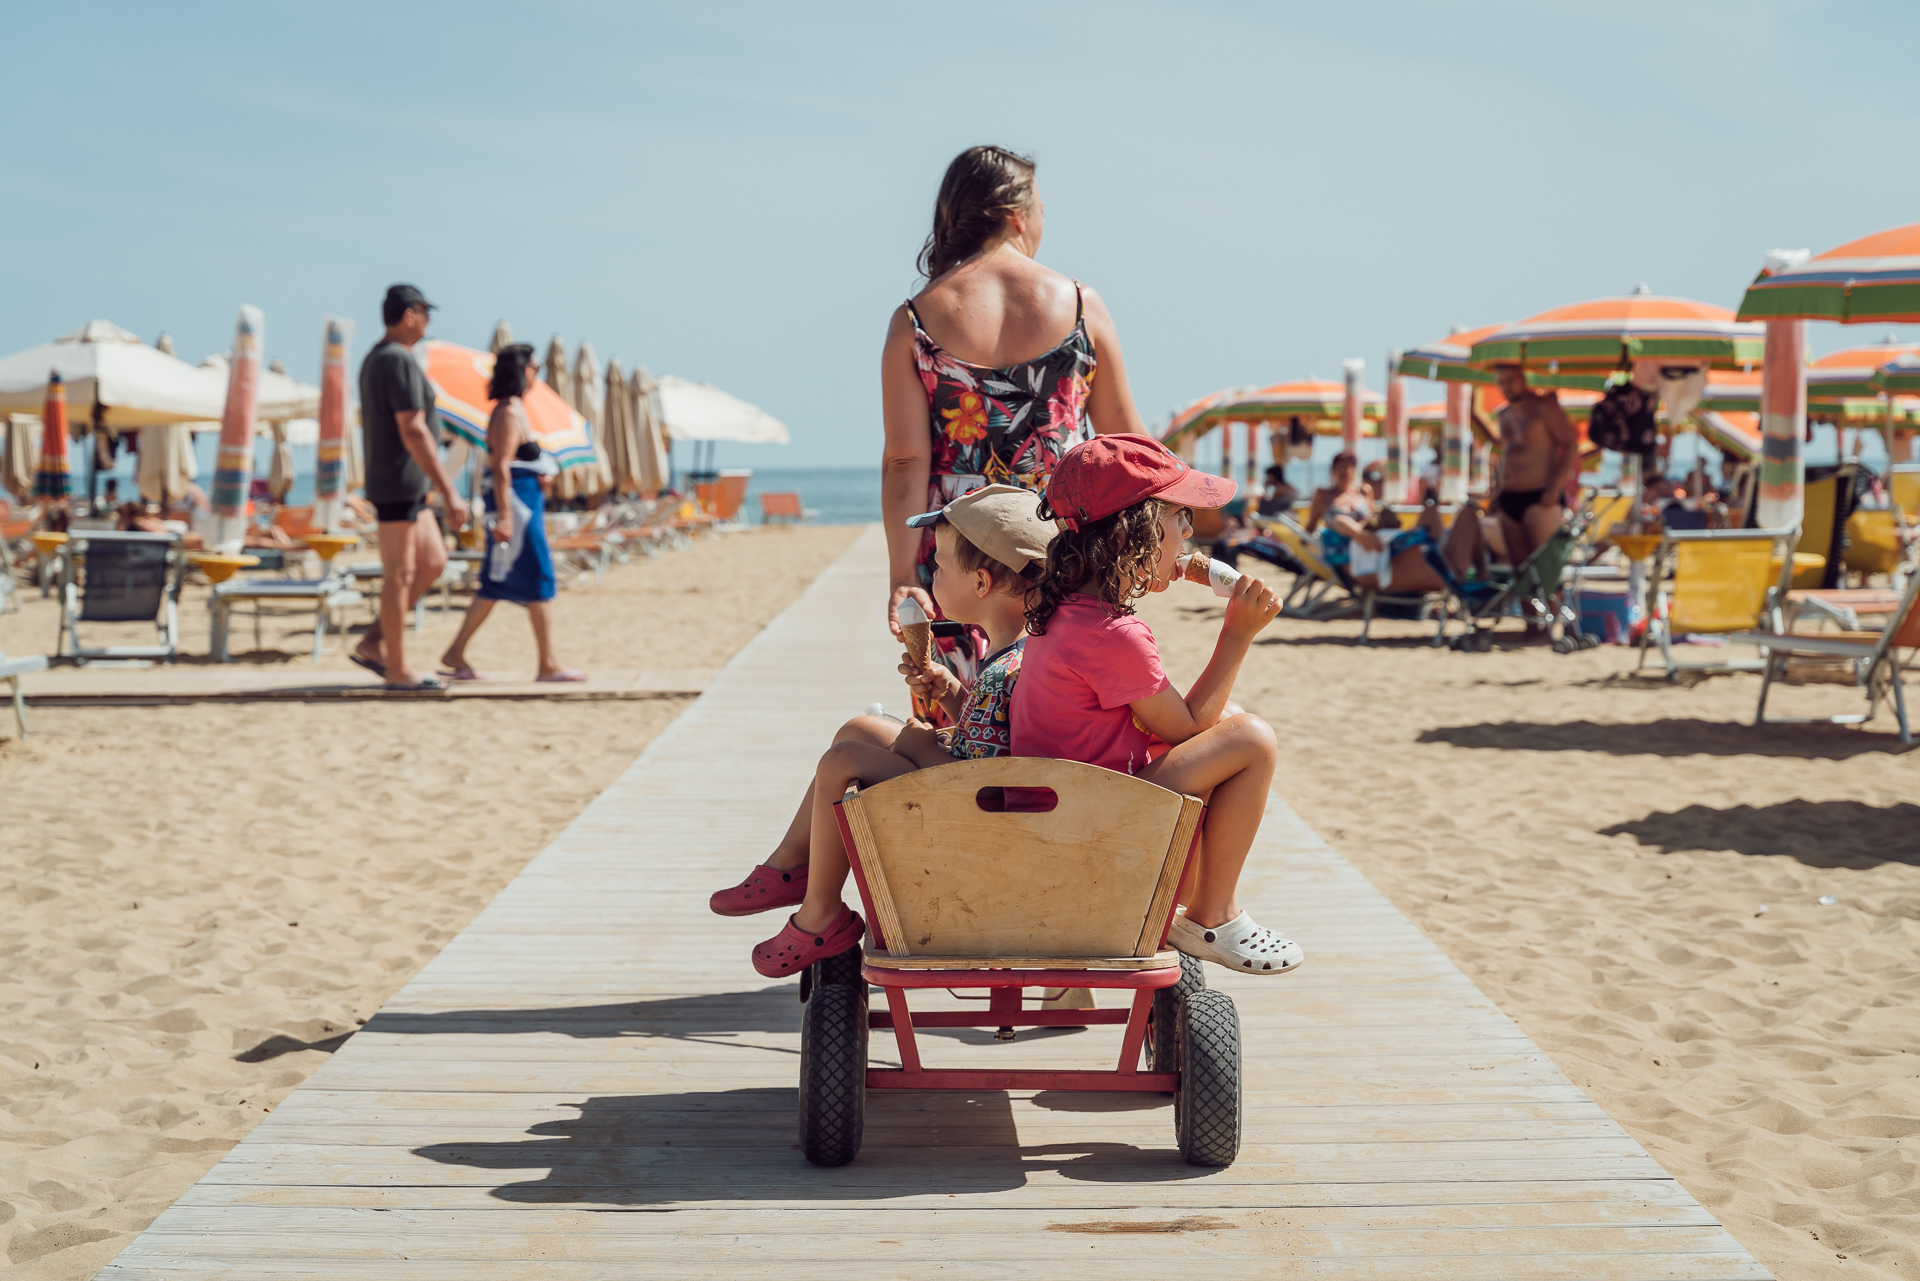 La spiaggia di Bibione, un paradiso smoke-free pieno di divertimenti